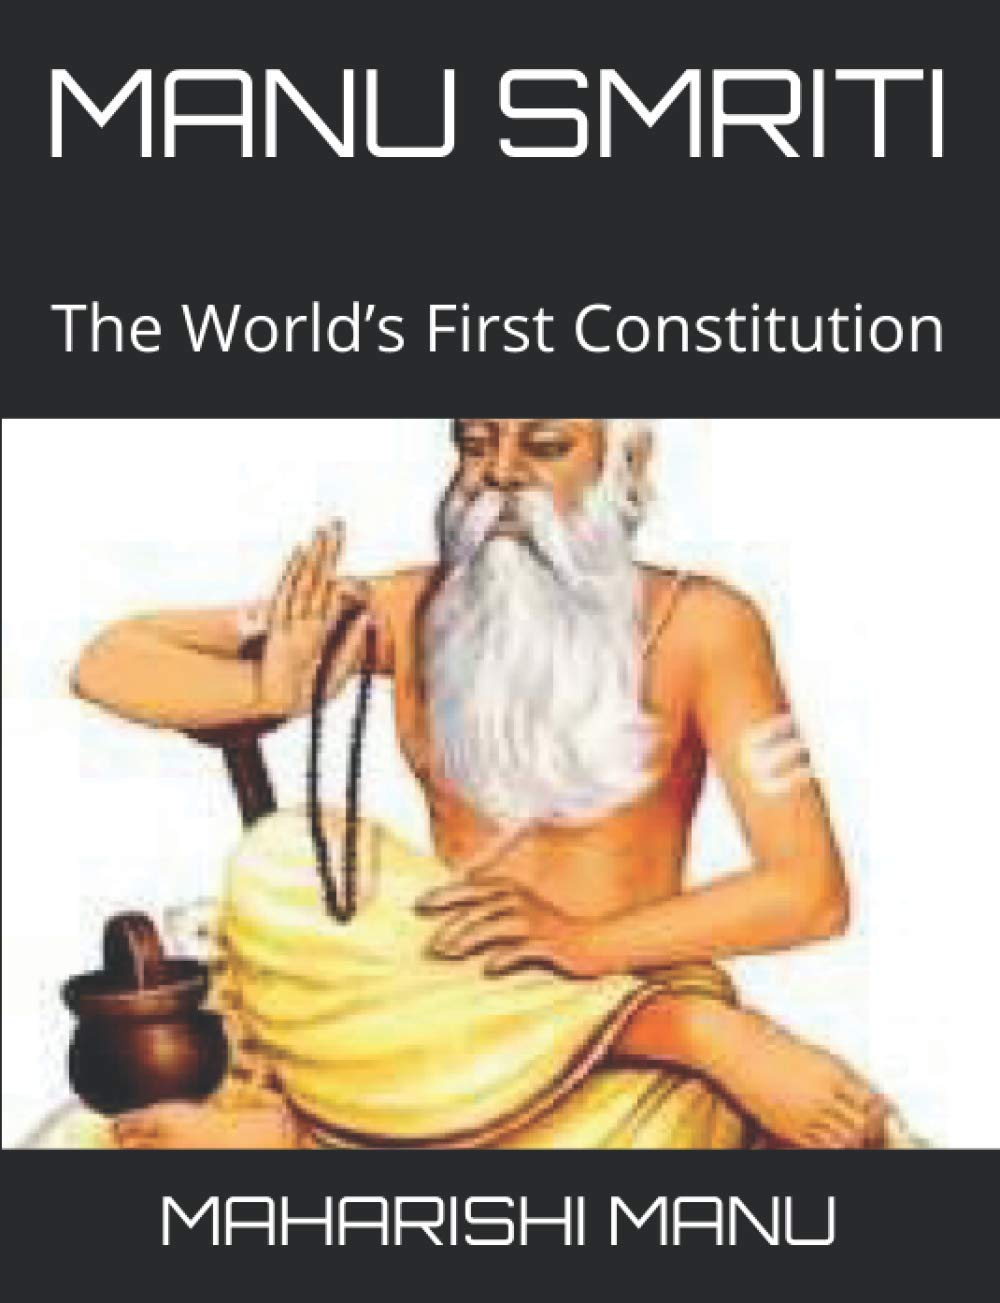 manusmriti the hindu law book